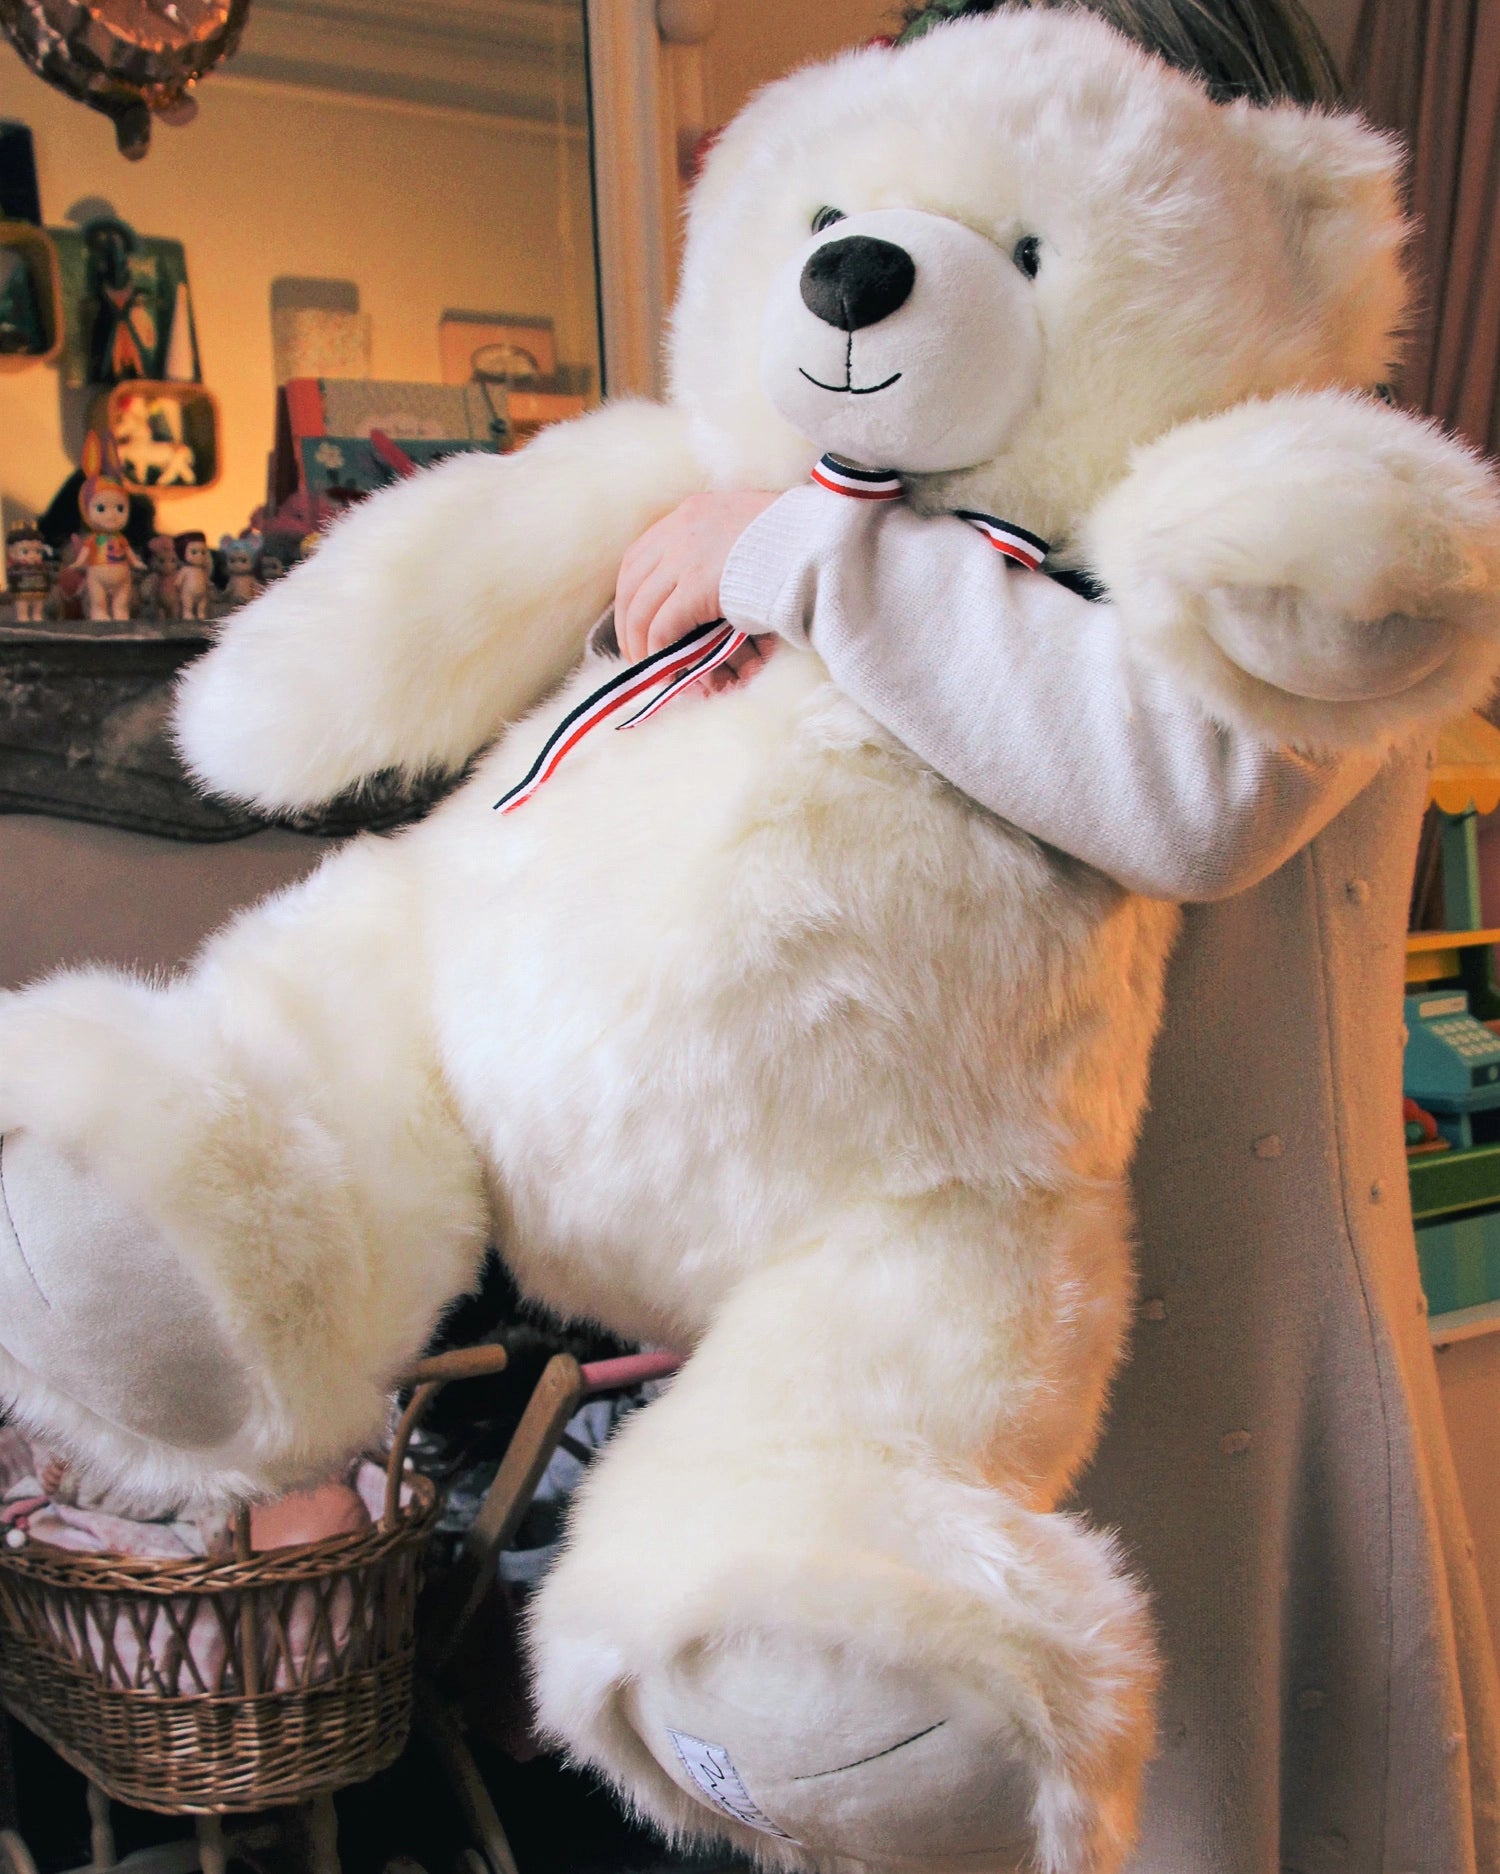 The French Teddy Bear 65 cm